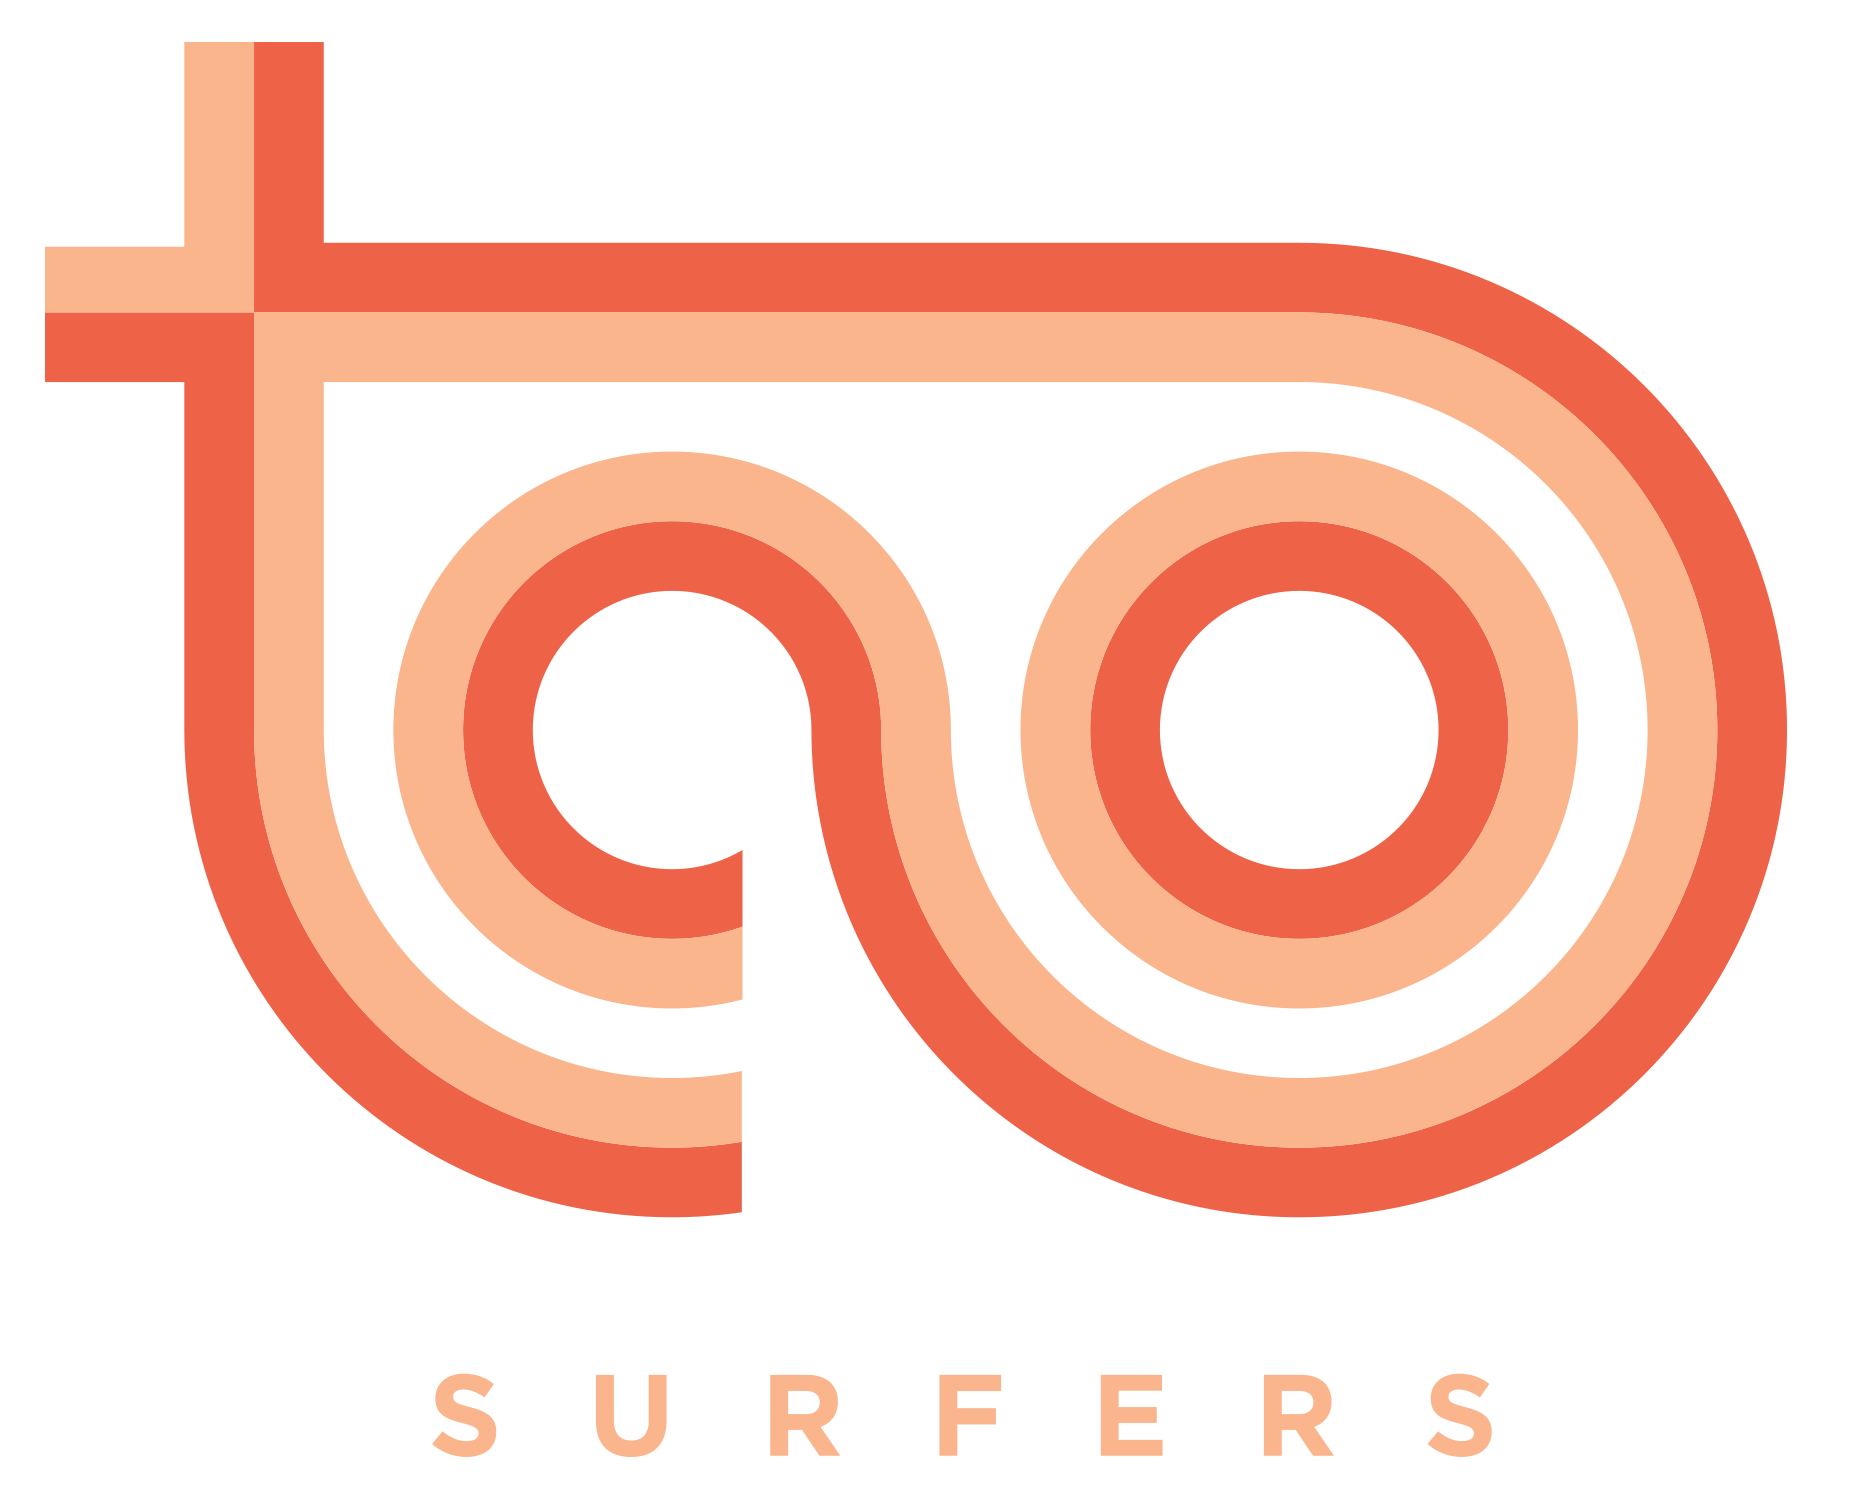 Taosurfers